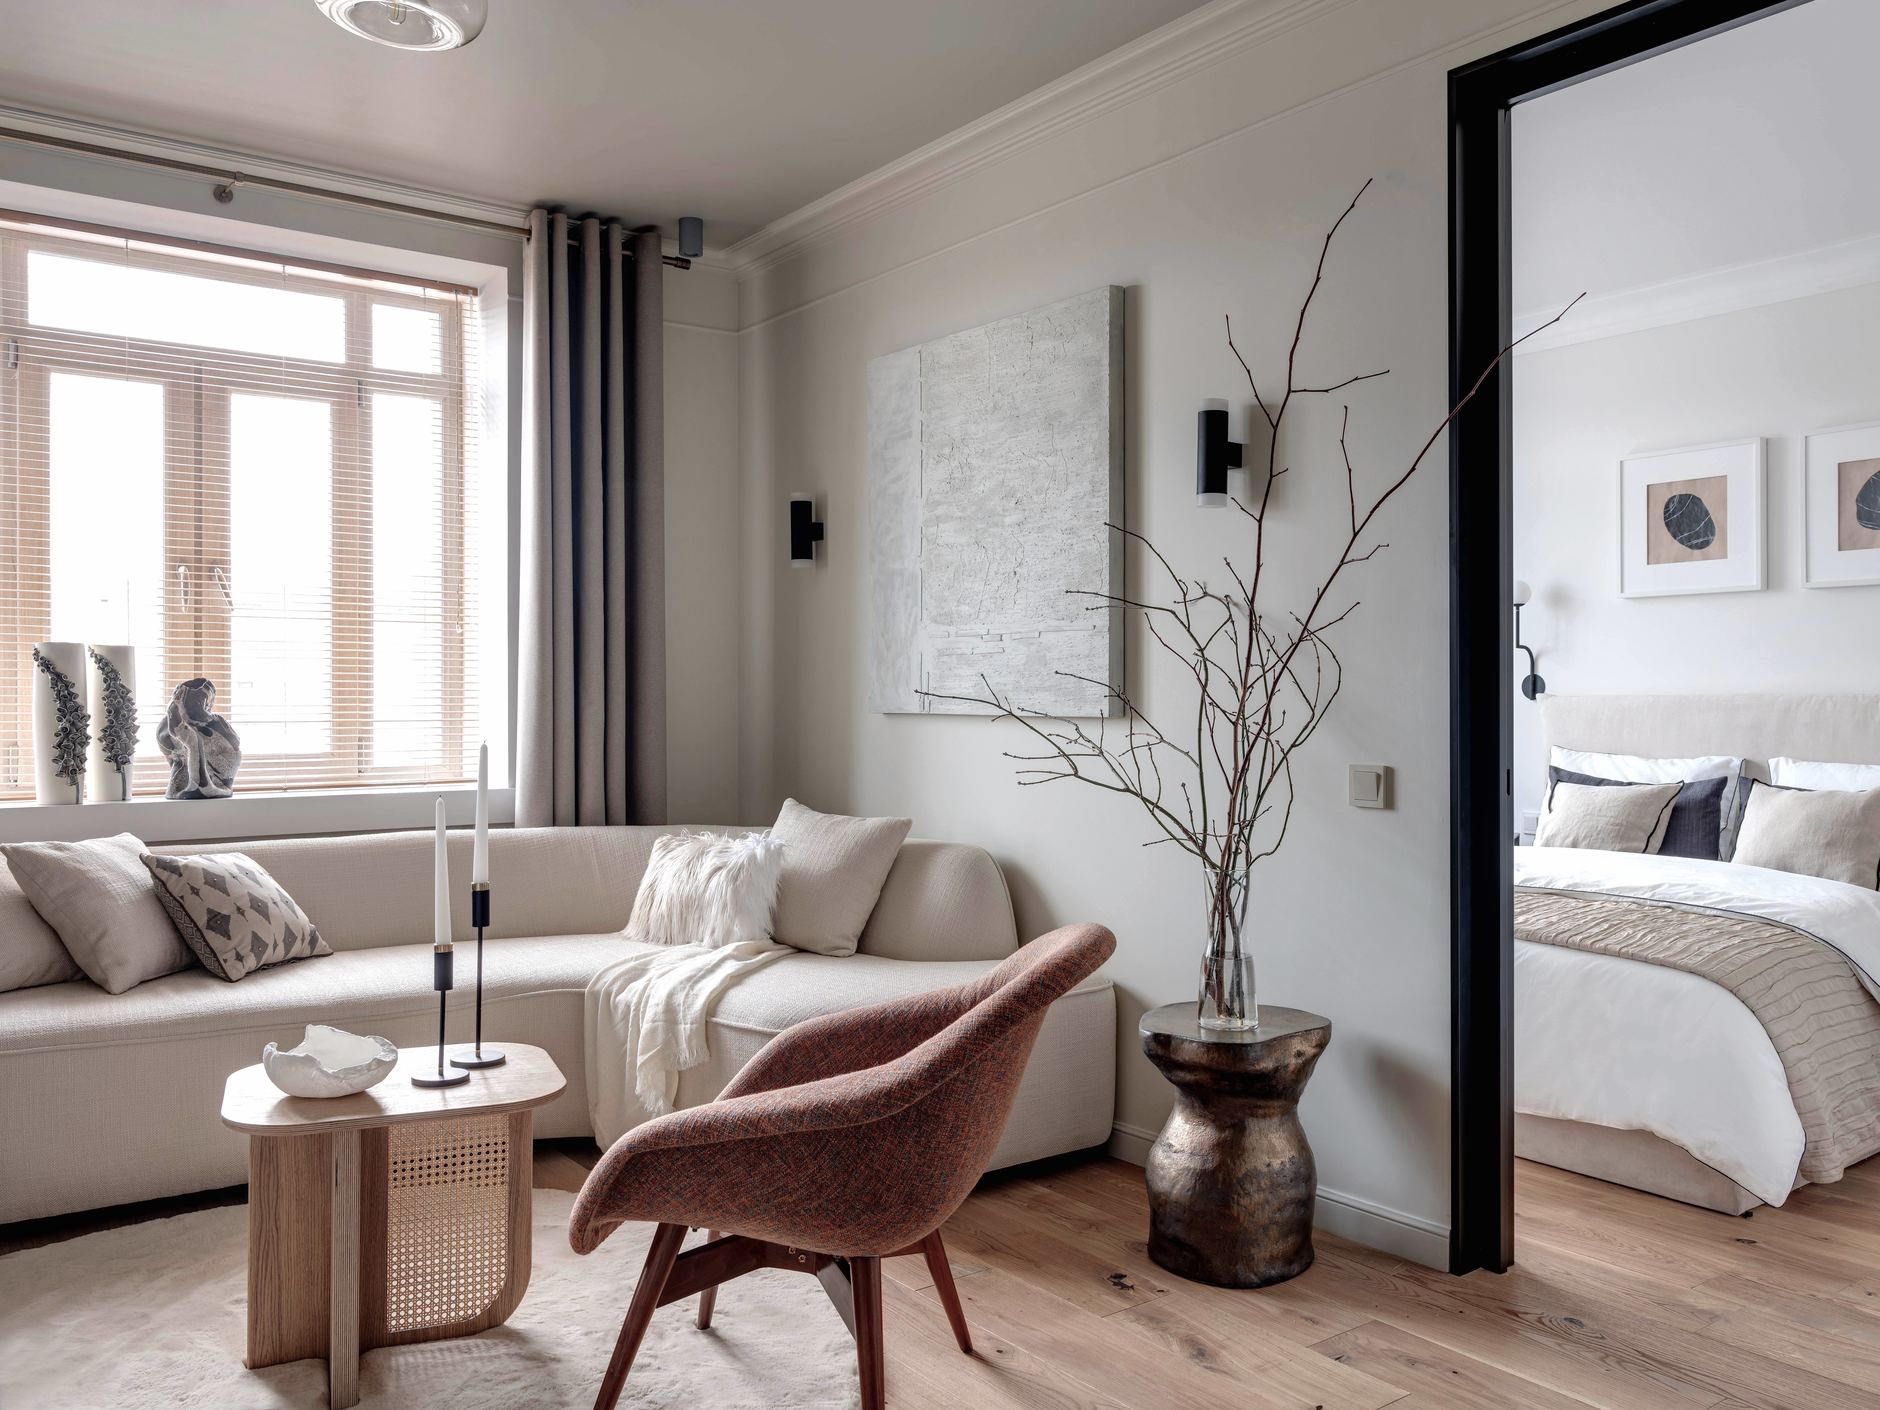 Tất cả các khu vực như phòng khách - phòng bếp - phòng ngủ đều được được bố trí tách biệt để tạo sự riêng tư nhưng vẫn có sự liên kết nhất định. Từ phòng khách, bạn có thể nhìn thấy phòng ngủ với phong cách xứ Bắc Âu với sàn gỗ và tường sơn trắng.